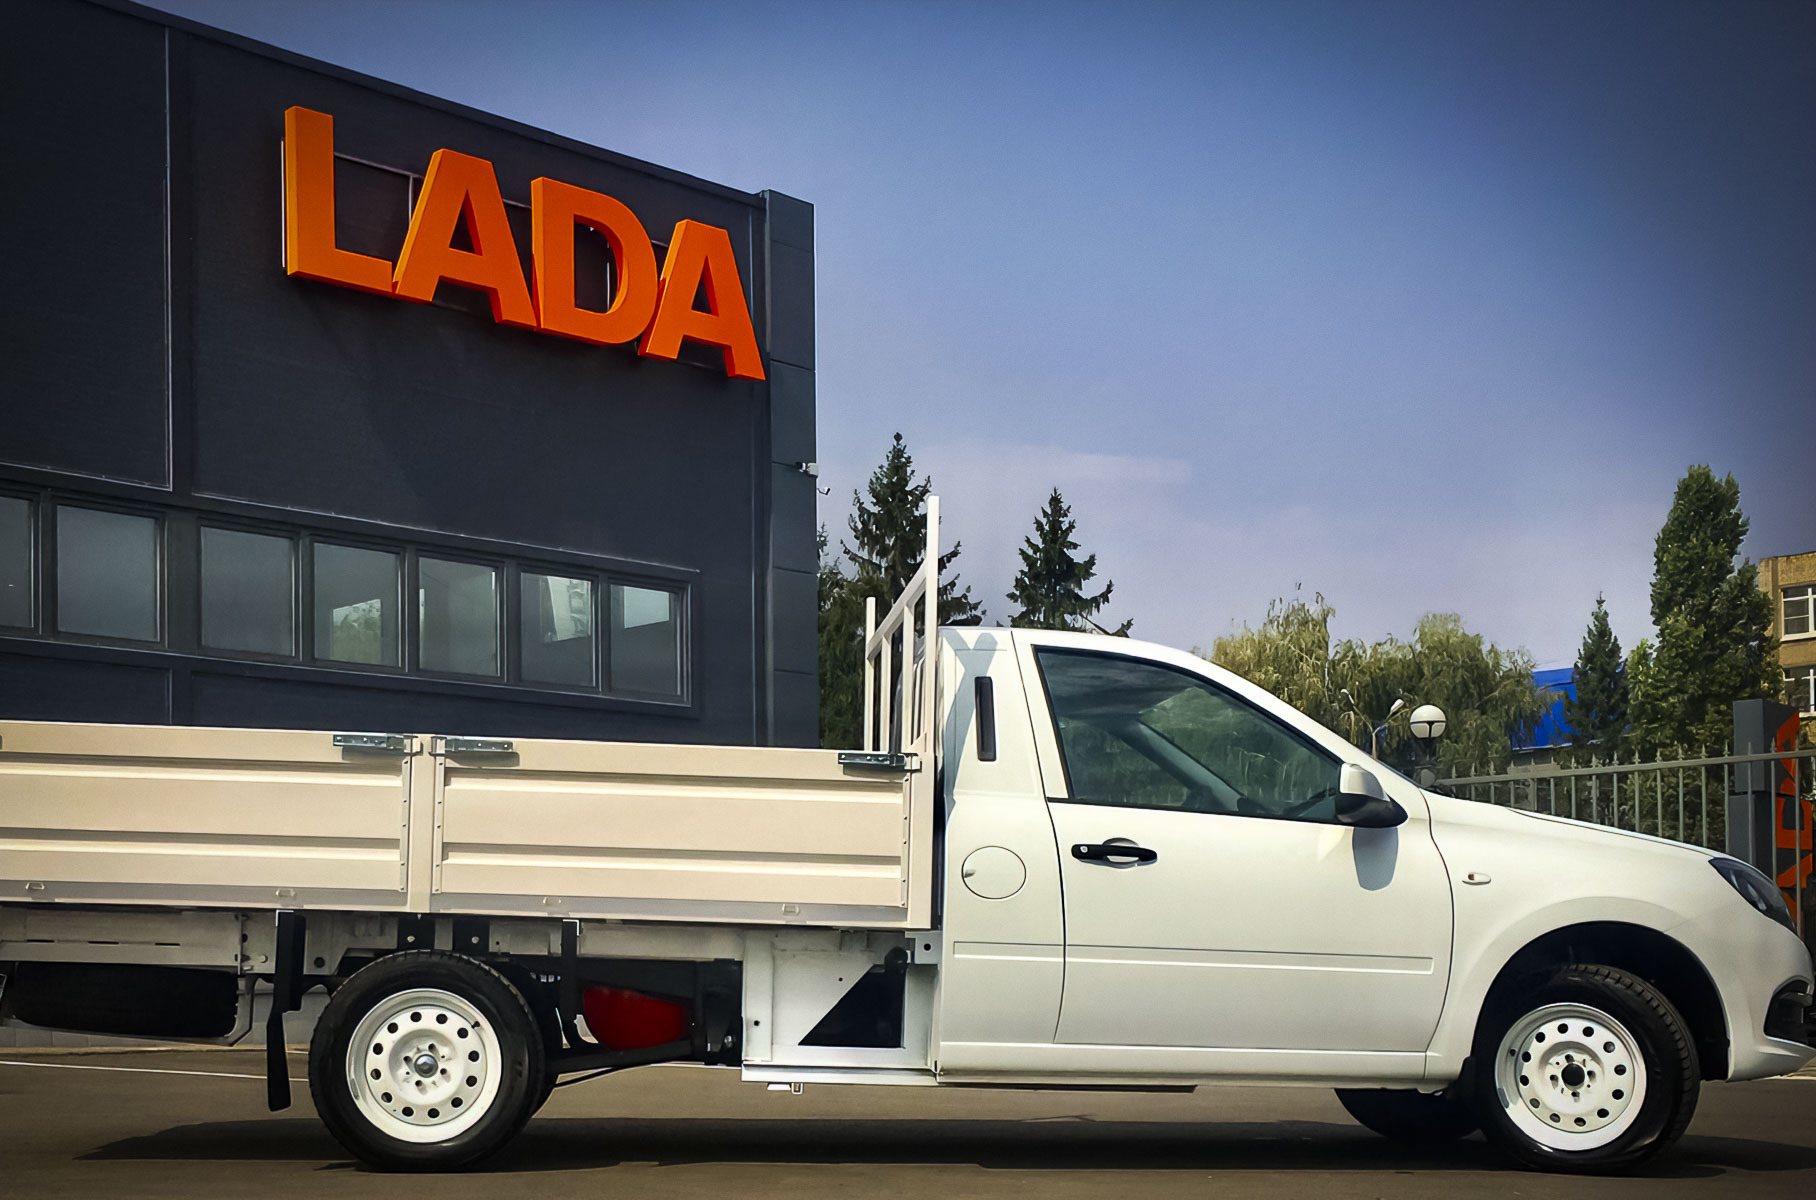 Посмотрите на грузовую Lada Granta. Ее грузоподъёмность — тонна